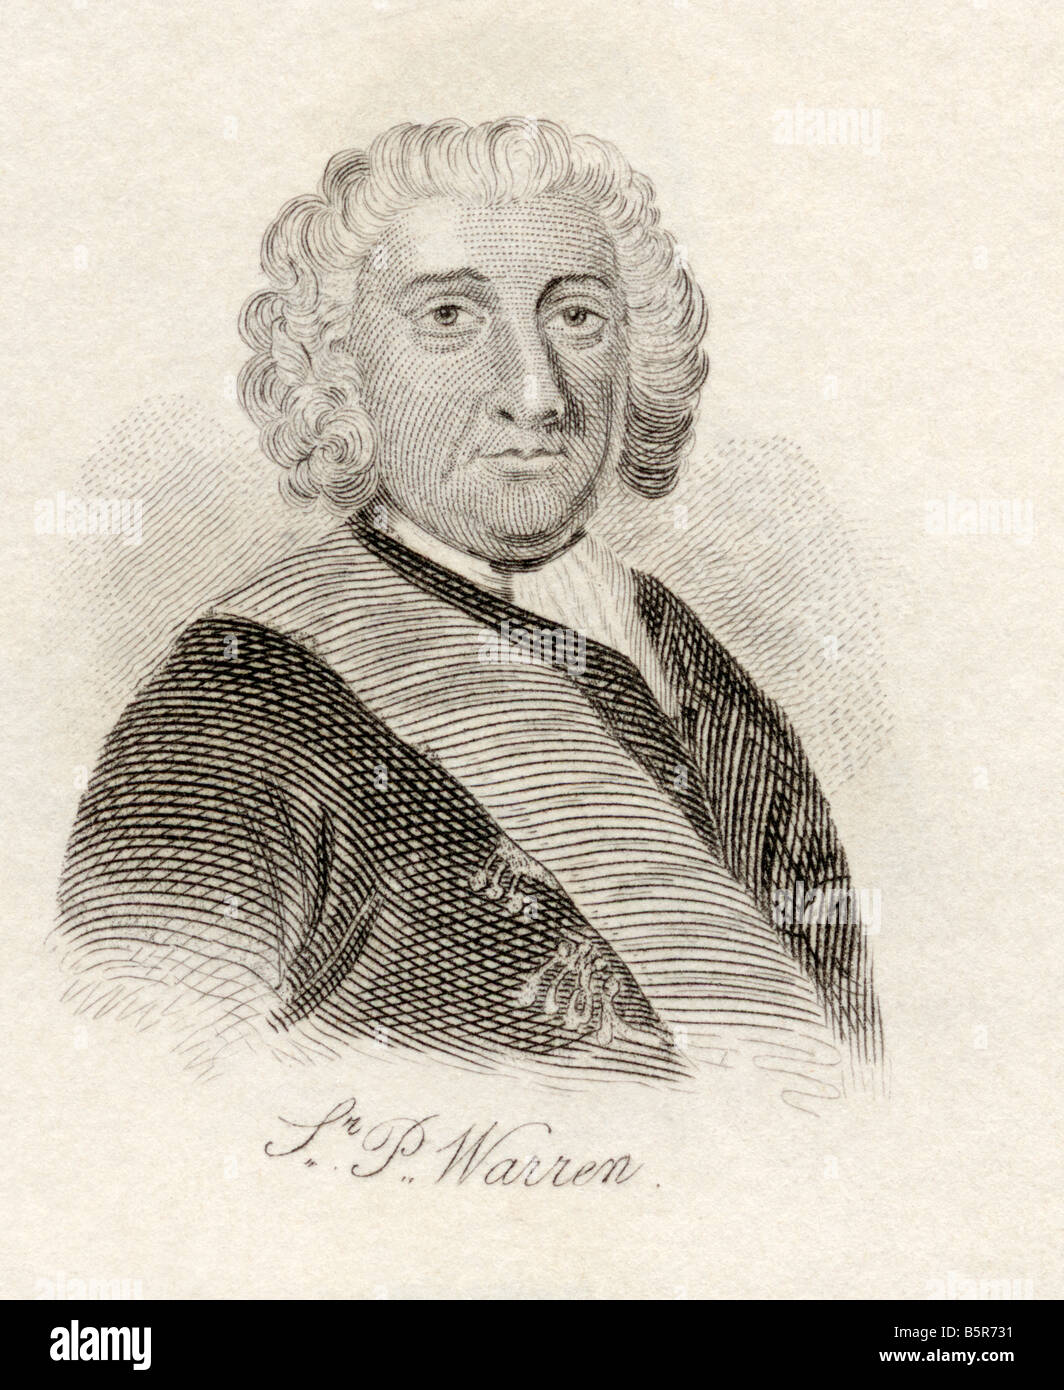 Amiral Sir Peter Warren. c.1703 - 1752. Officier de marine britannique. Extrait du livre Crabb's Historical Dictionary, publié en 1825. Banque D'Images